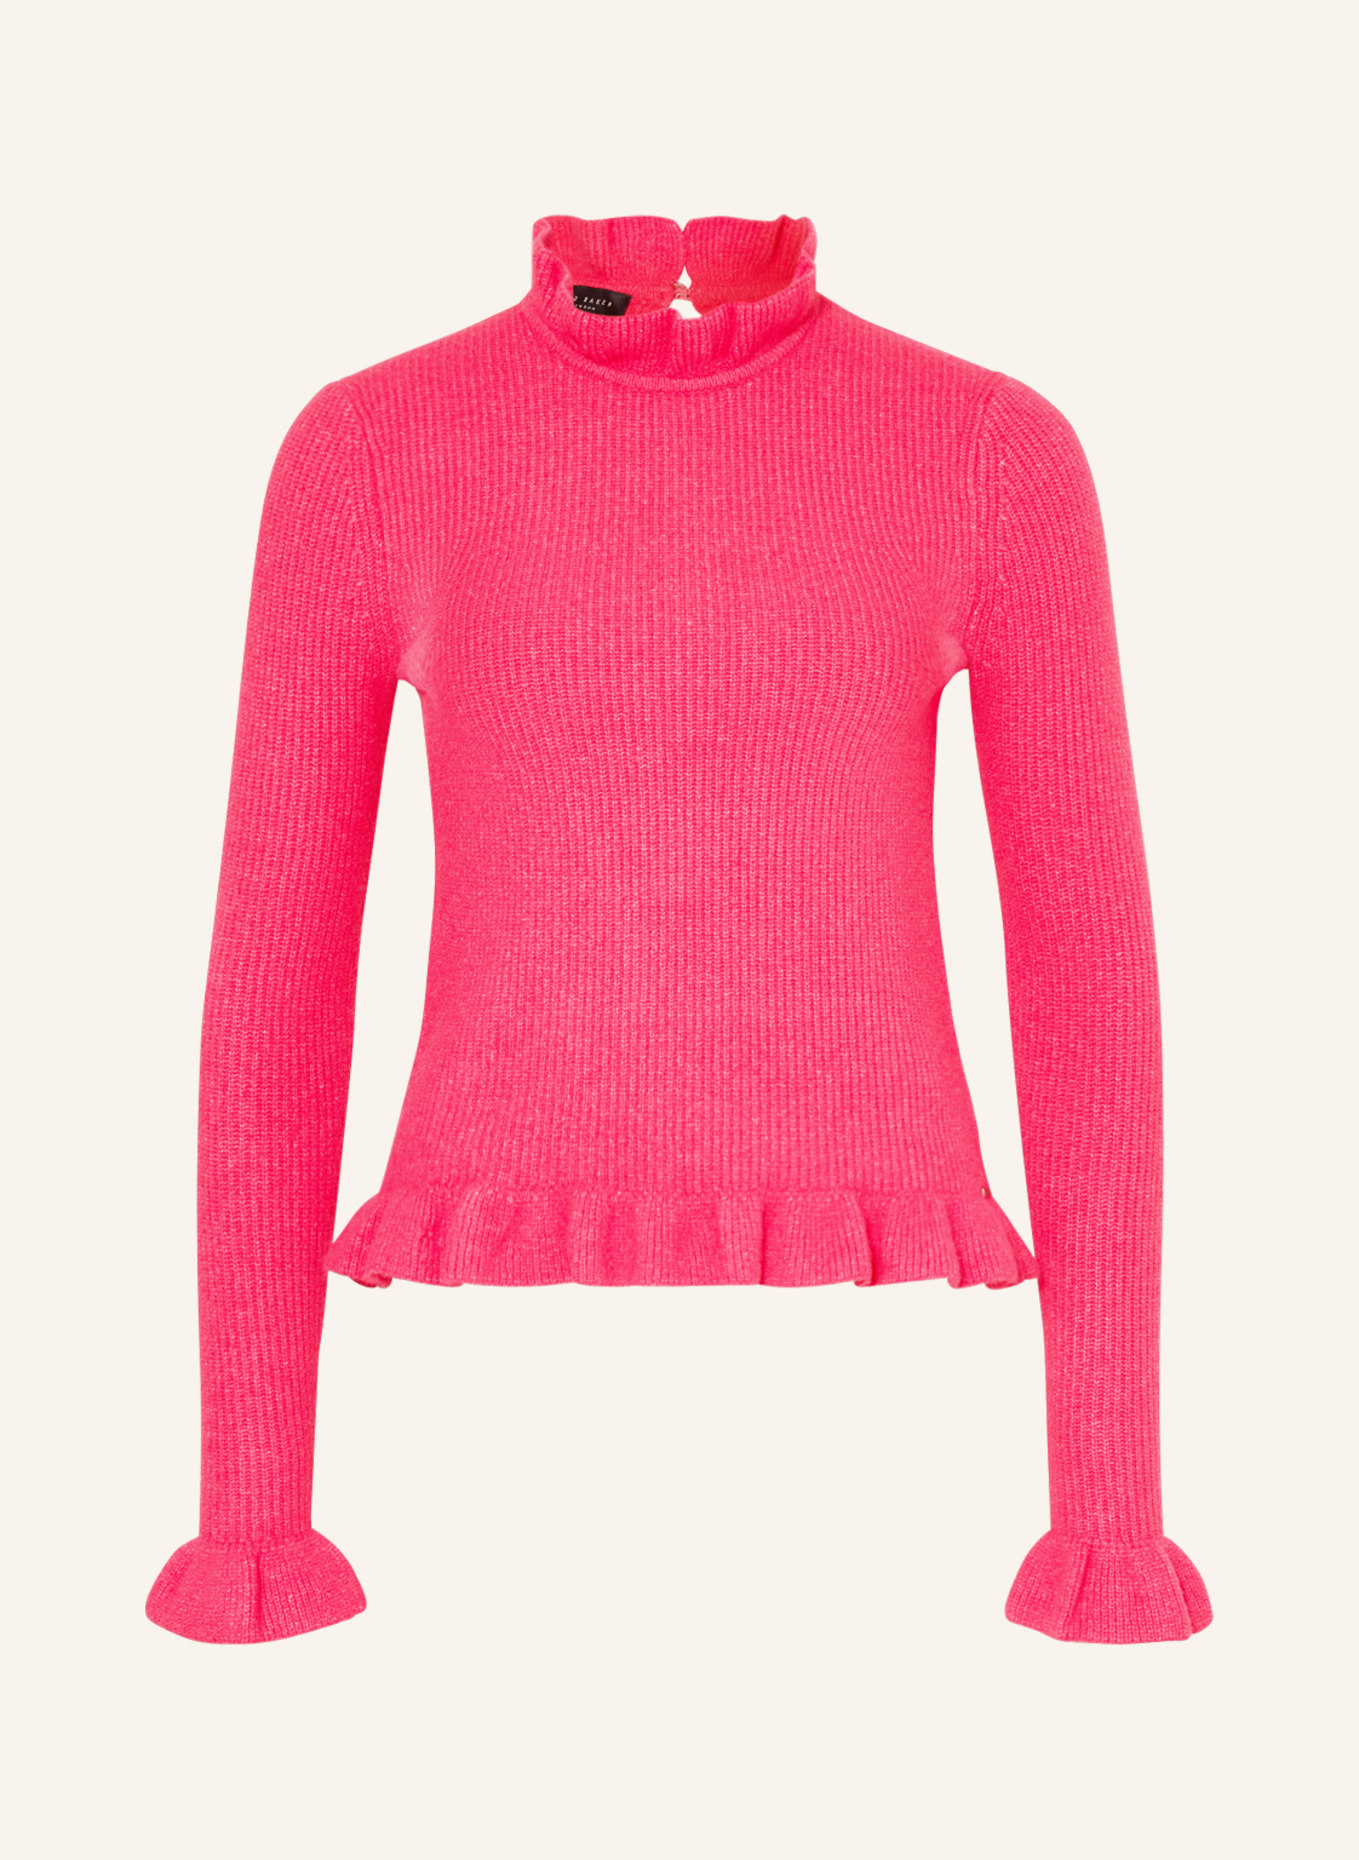 TED BAKER Pullover PIPALEE mit Rüschen, Farbe: PINK (Bild 1)